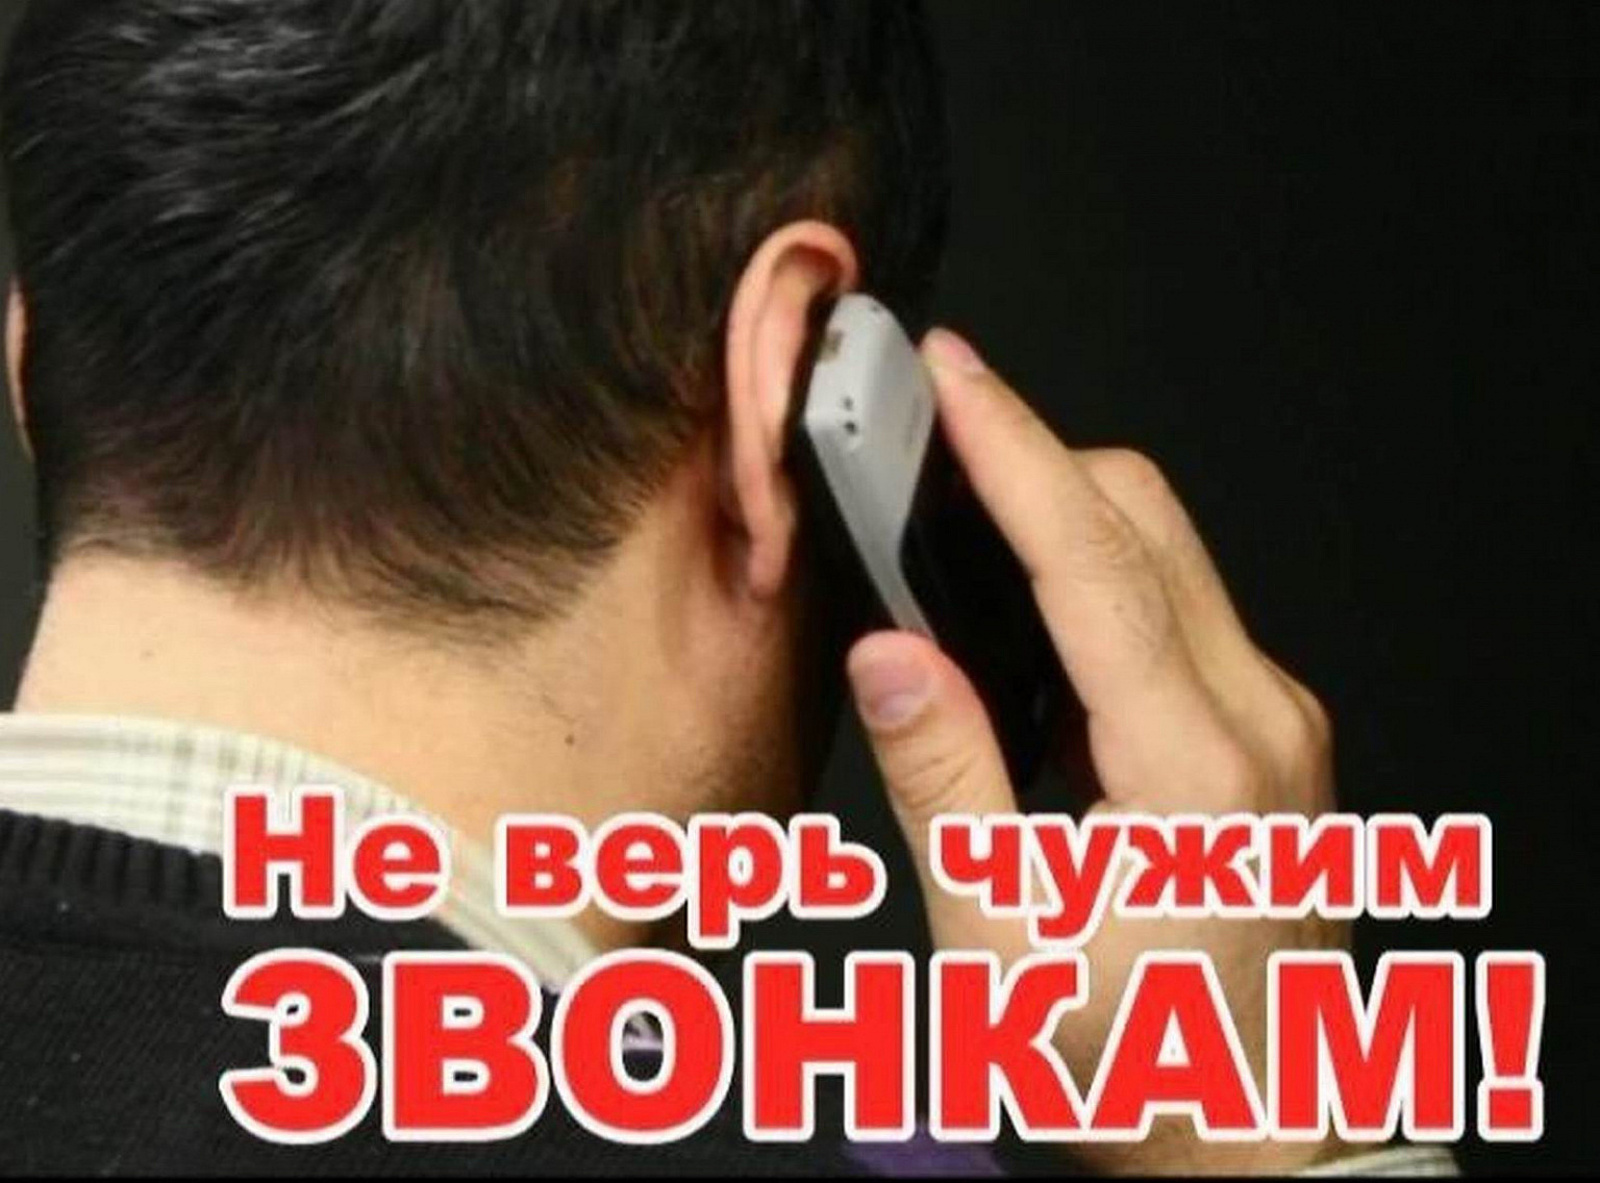 Телефонные мошенники начали пугать россиян военкоматами